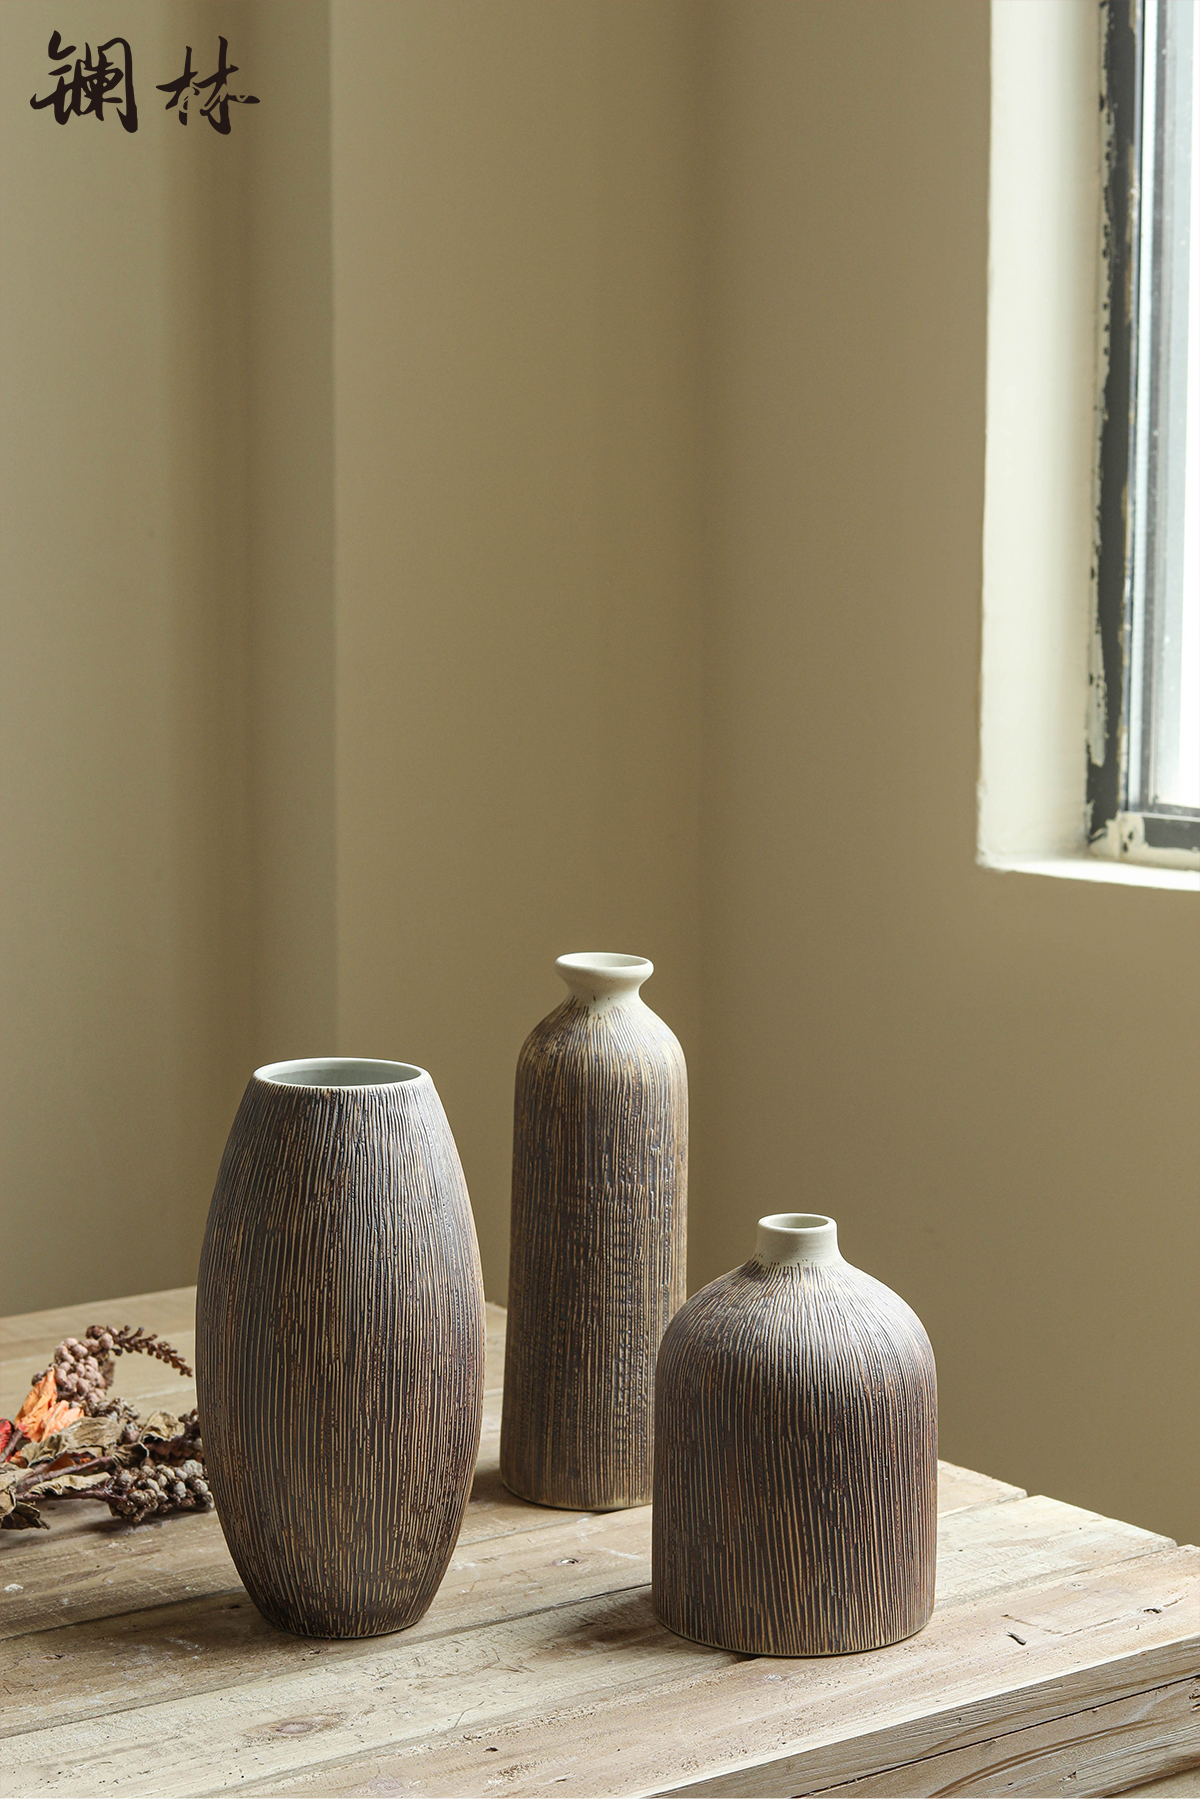 花瓶陶瓷复古中式粗陶花插客厅茶几装饰品禅意摆件插花插干花陶罐